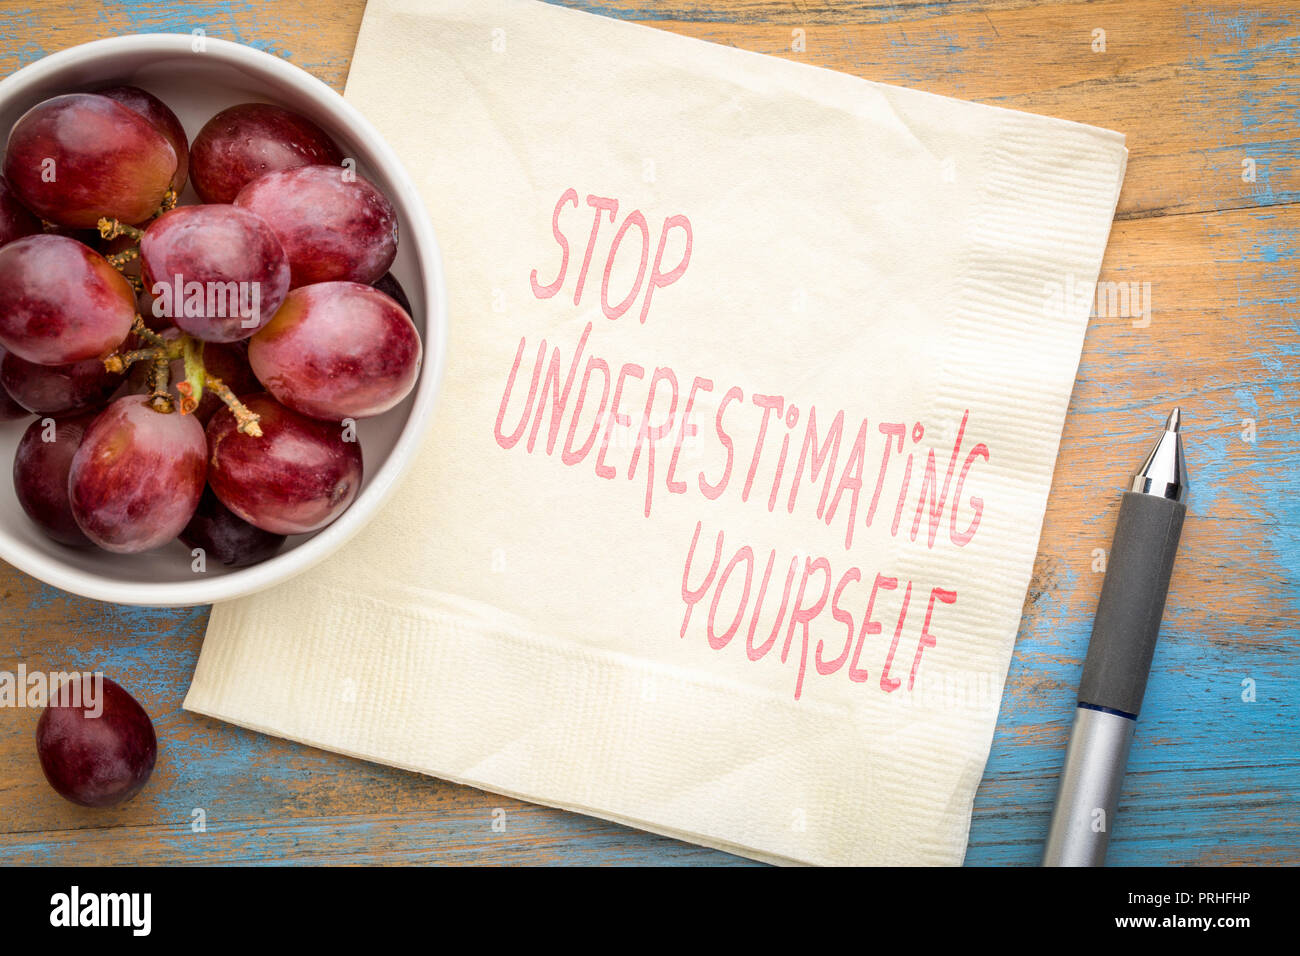 Stop unterschätzen Selbst - inspirational Handschrift auf eine Serviette mit frischen Weintrauben Stockfoto